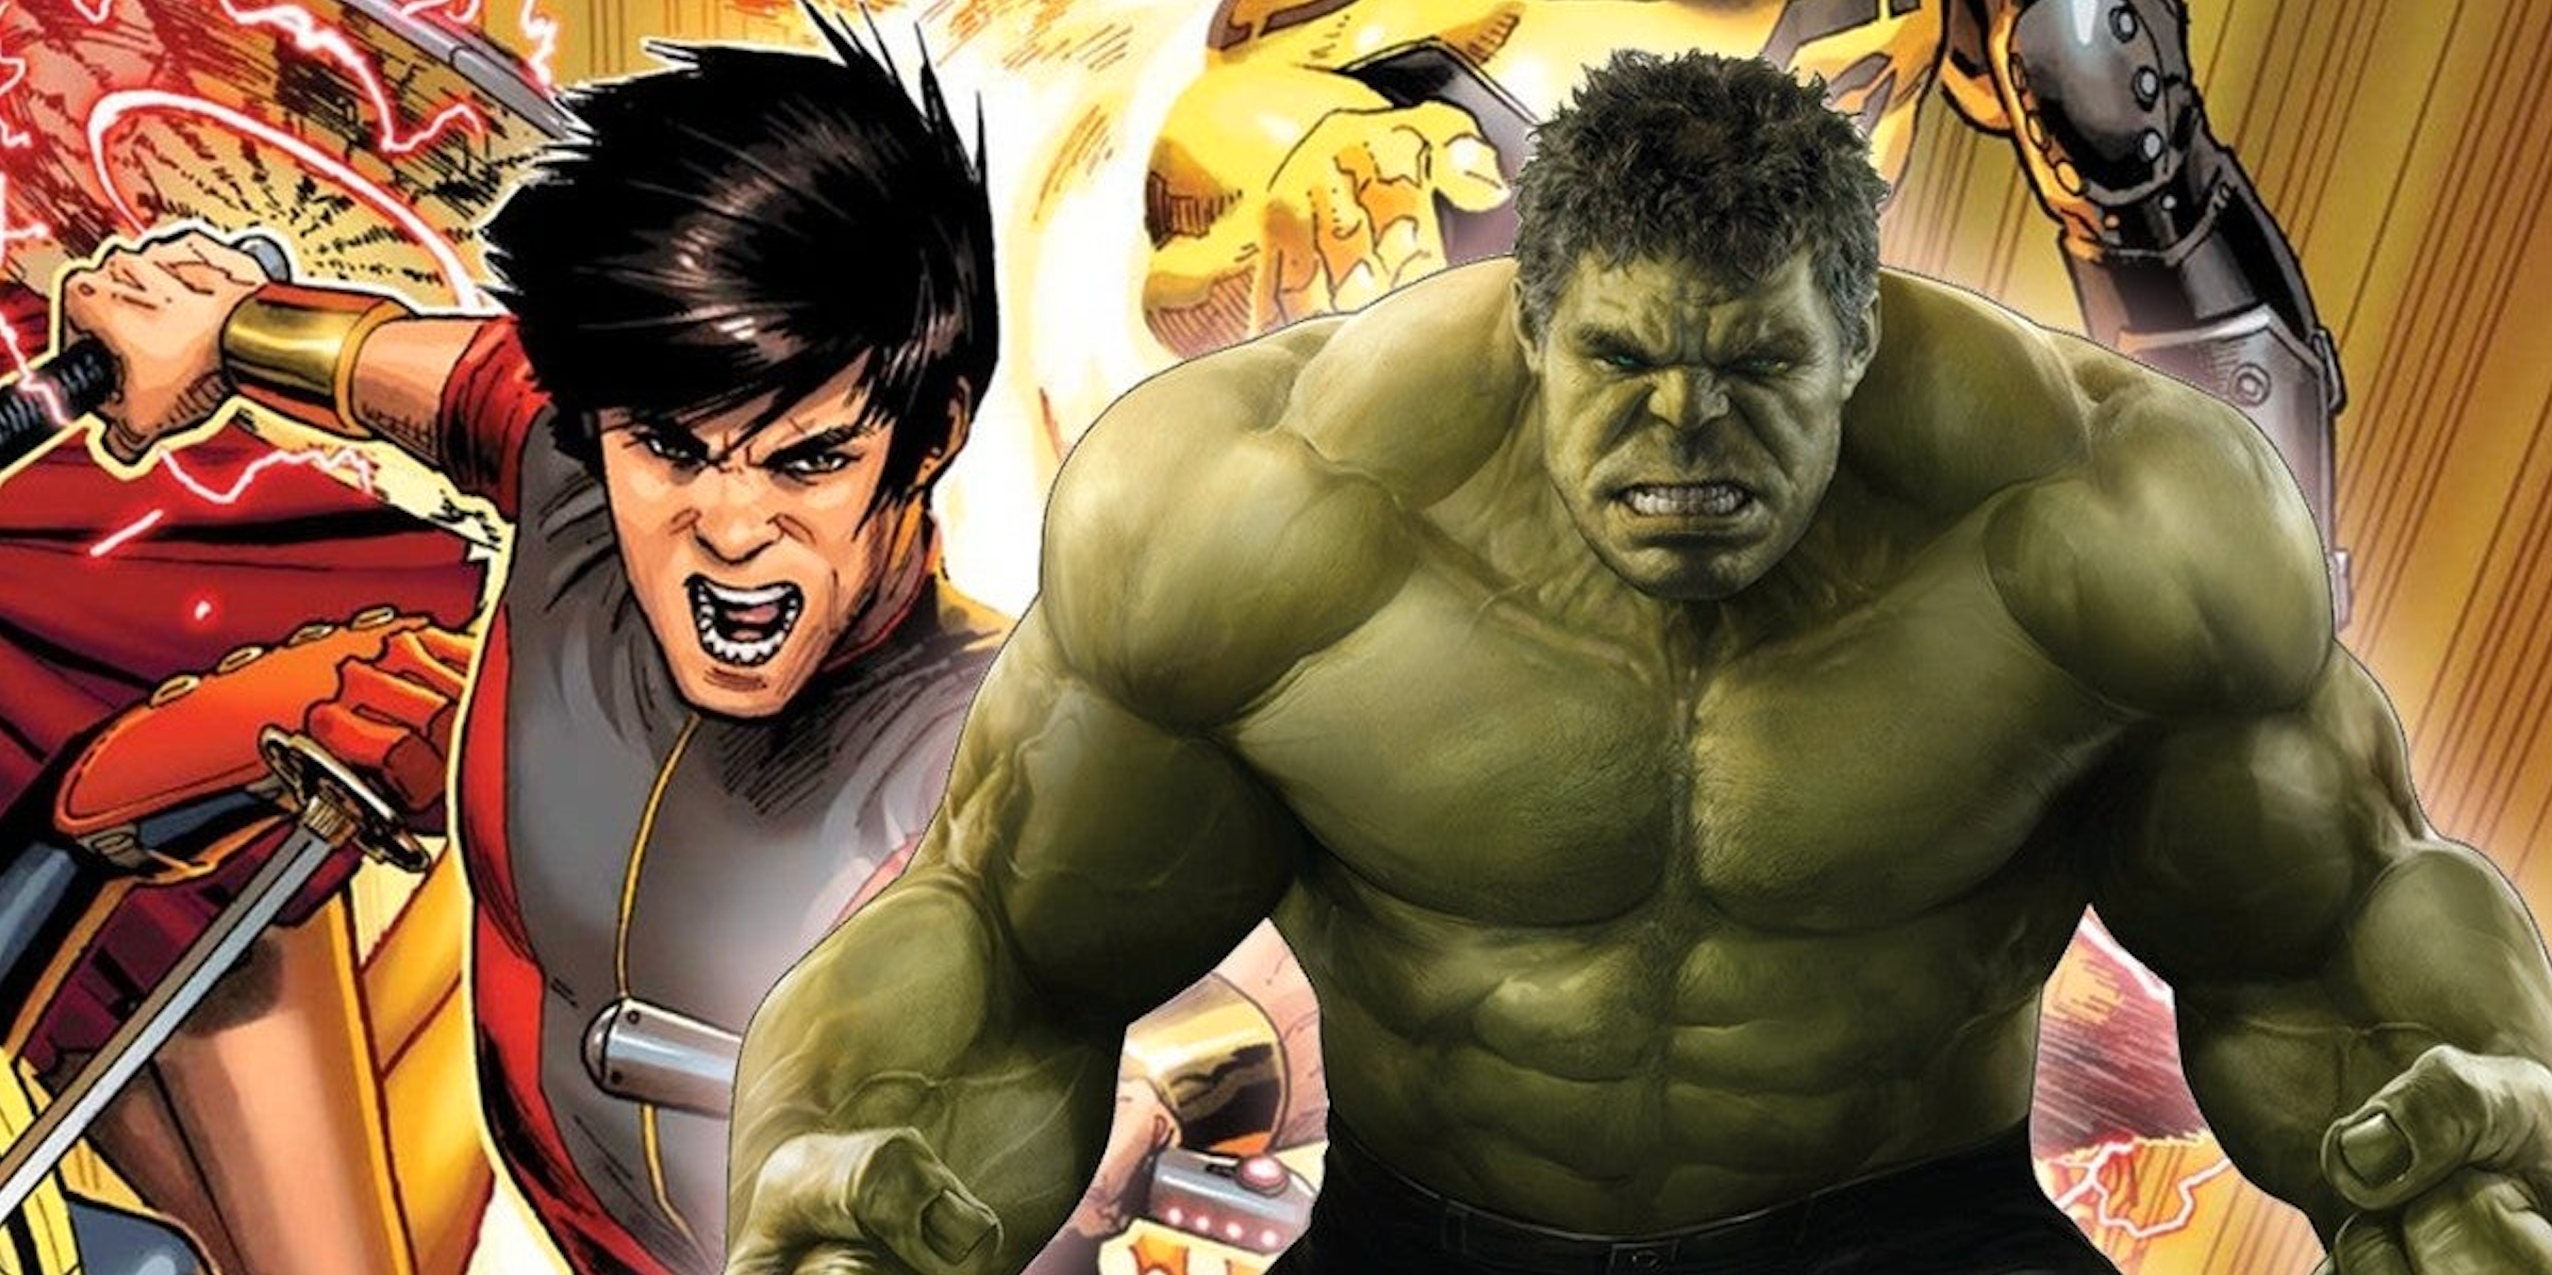 Shang-Chi luchó contra Hulk por un cheque de cena